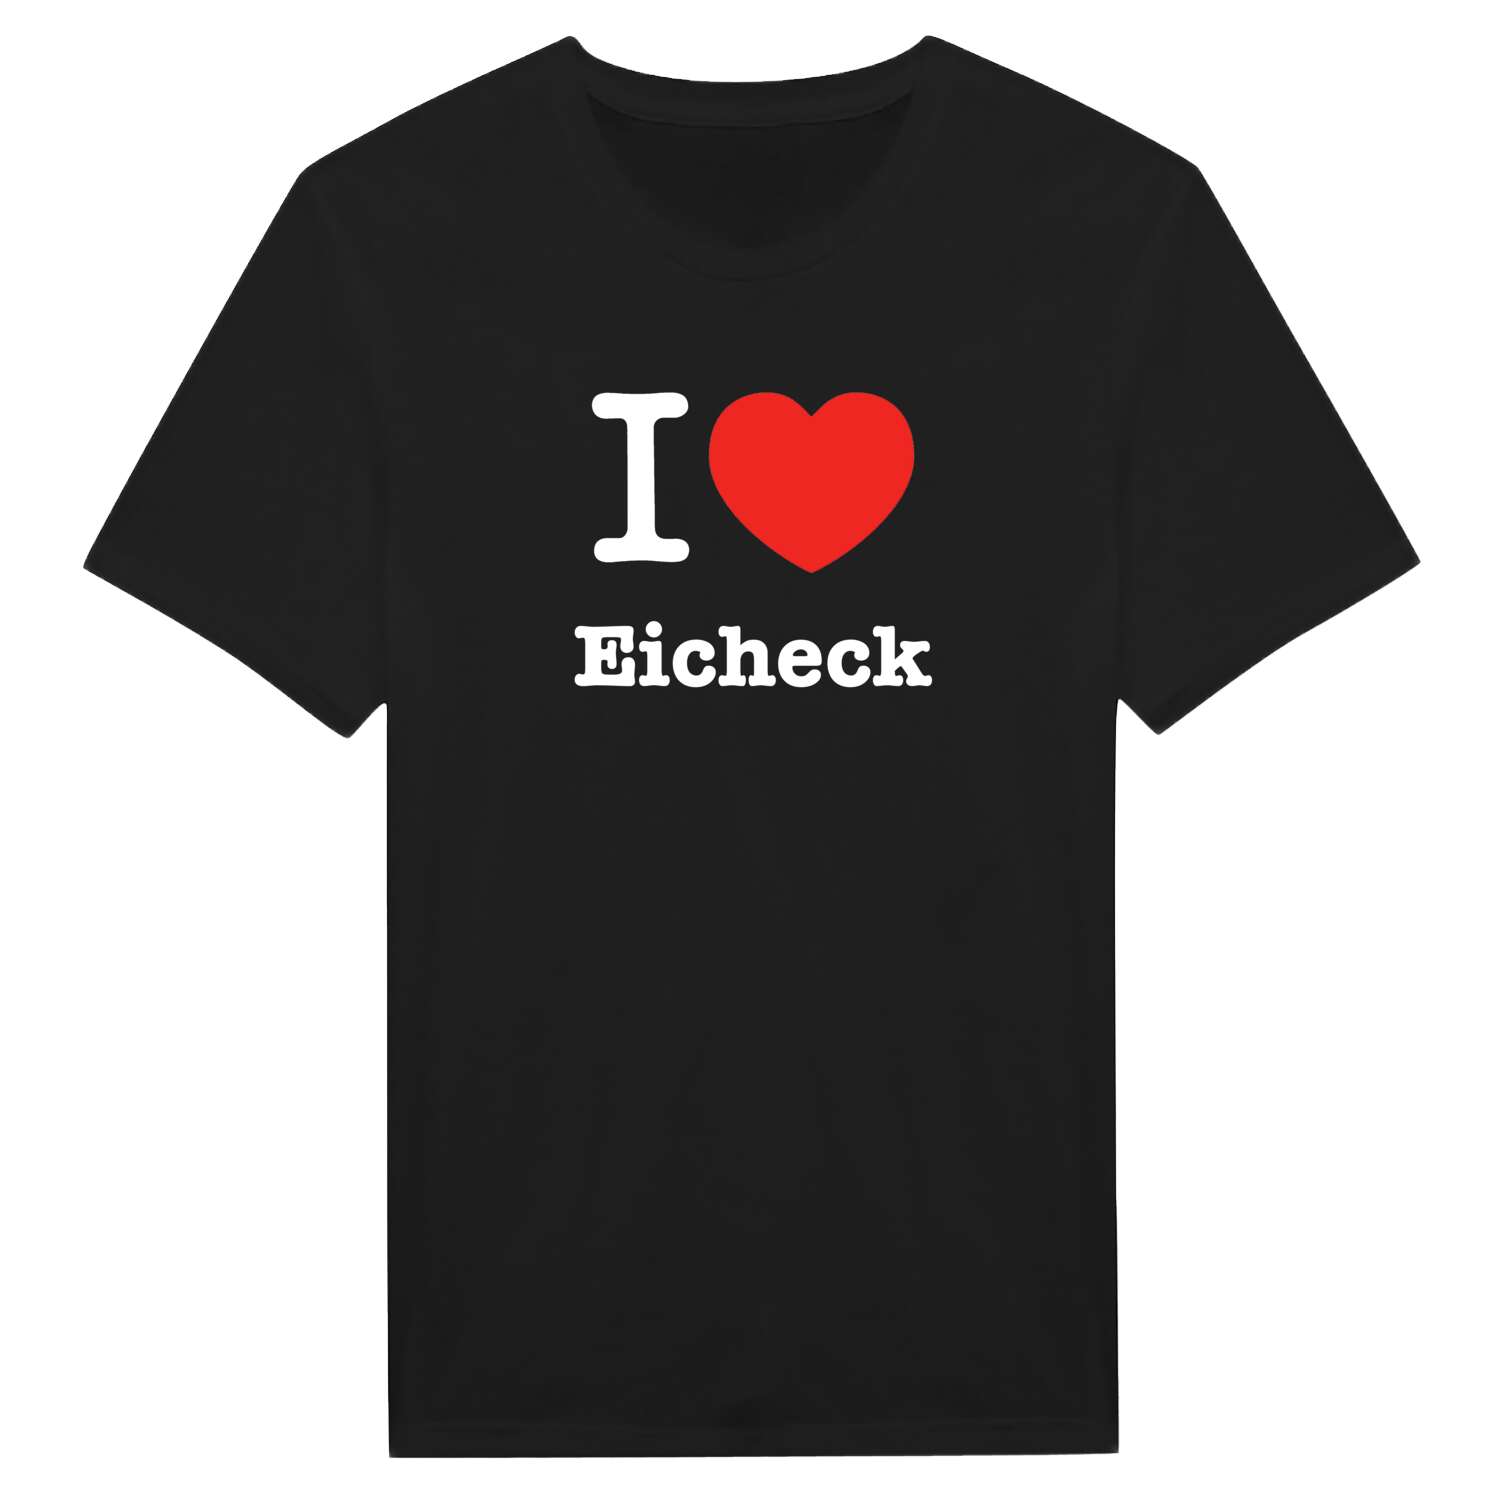 Eicheck T-Shirt »I love«